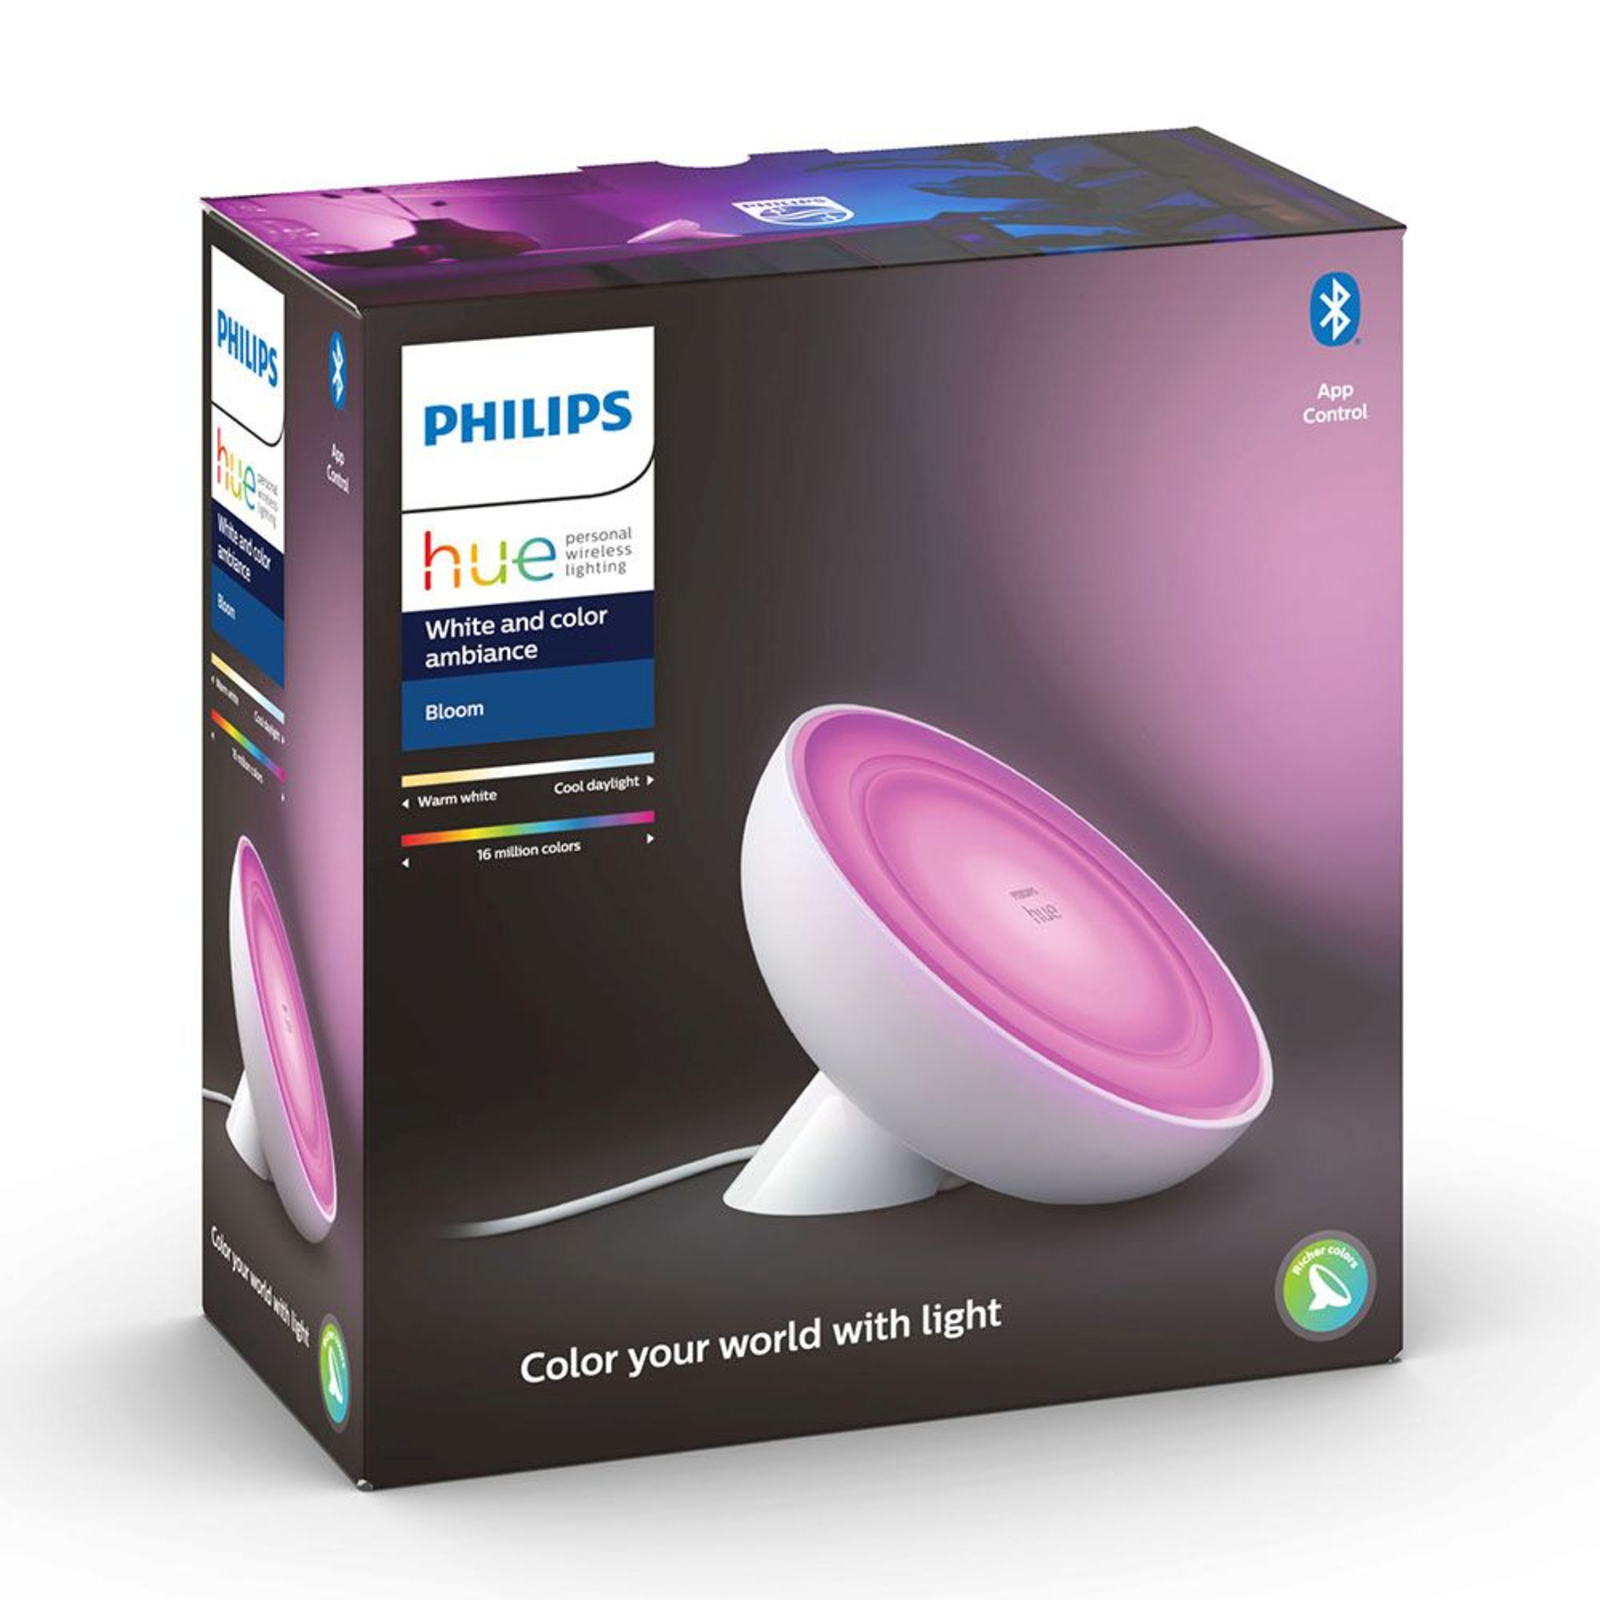 Philips Hue Bloom lámpa fehér, fehér és színes